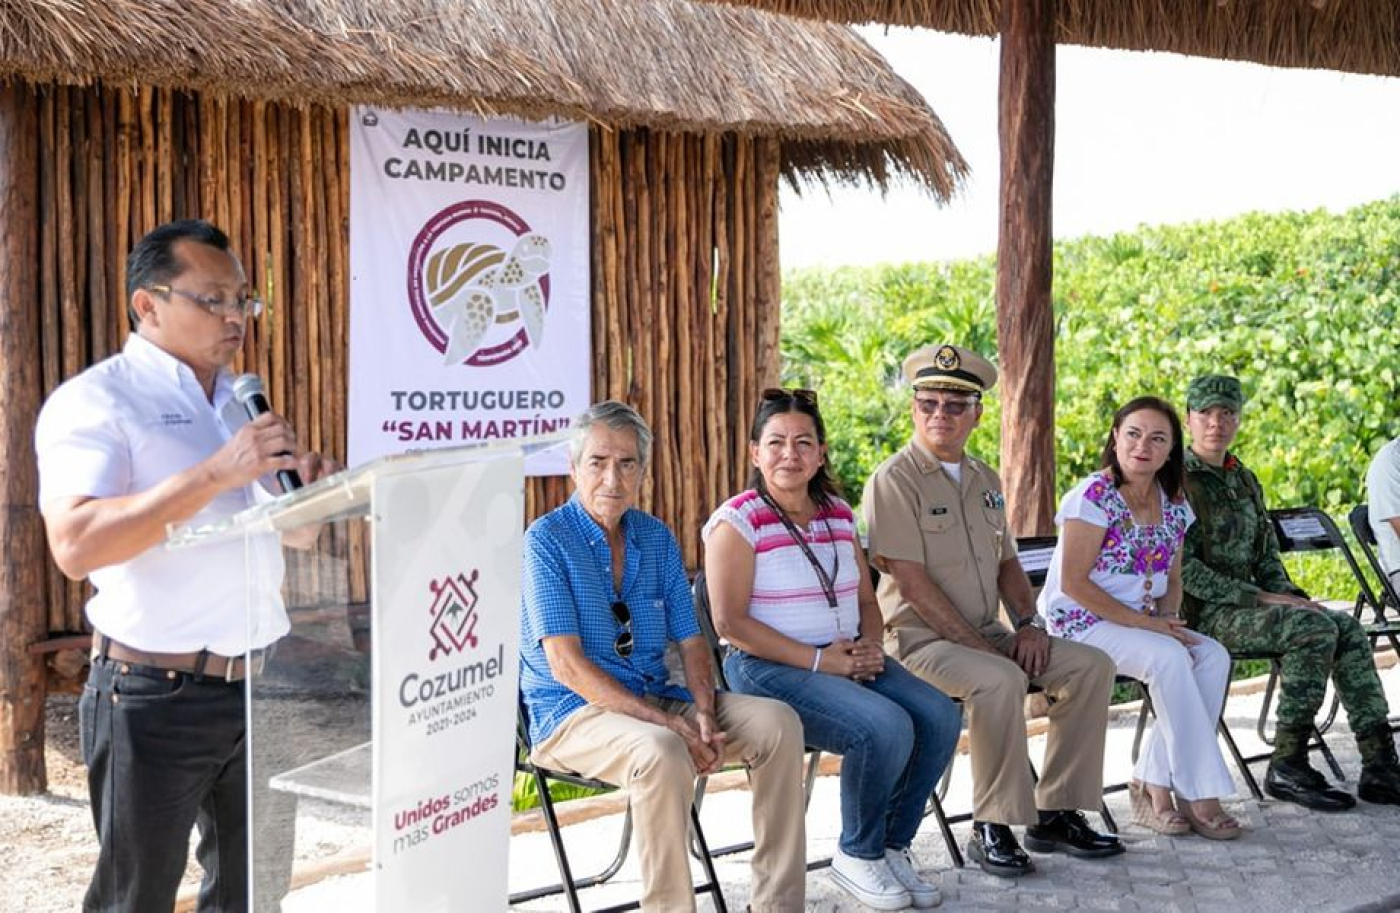 Juanita Alonso inaugura instalaciones del campamento tortuguero “San Martín”